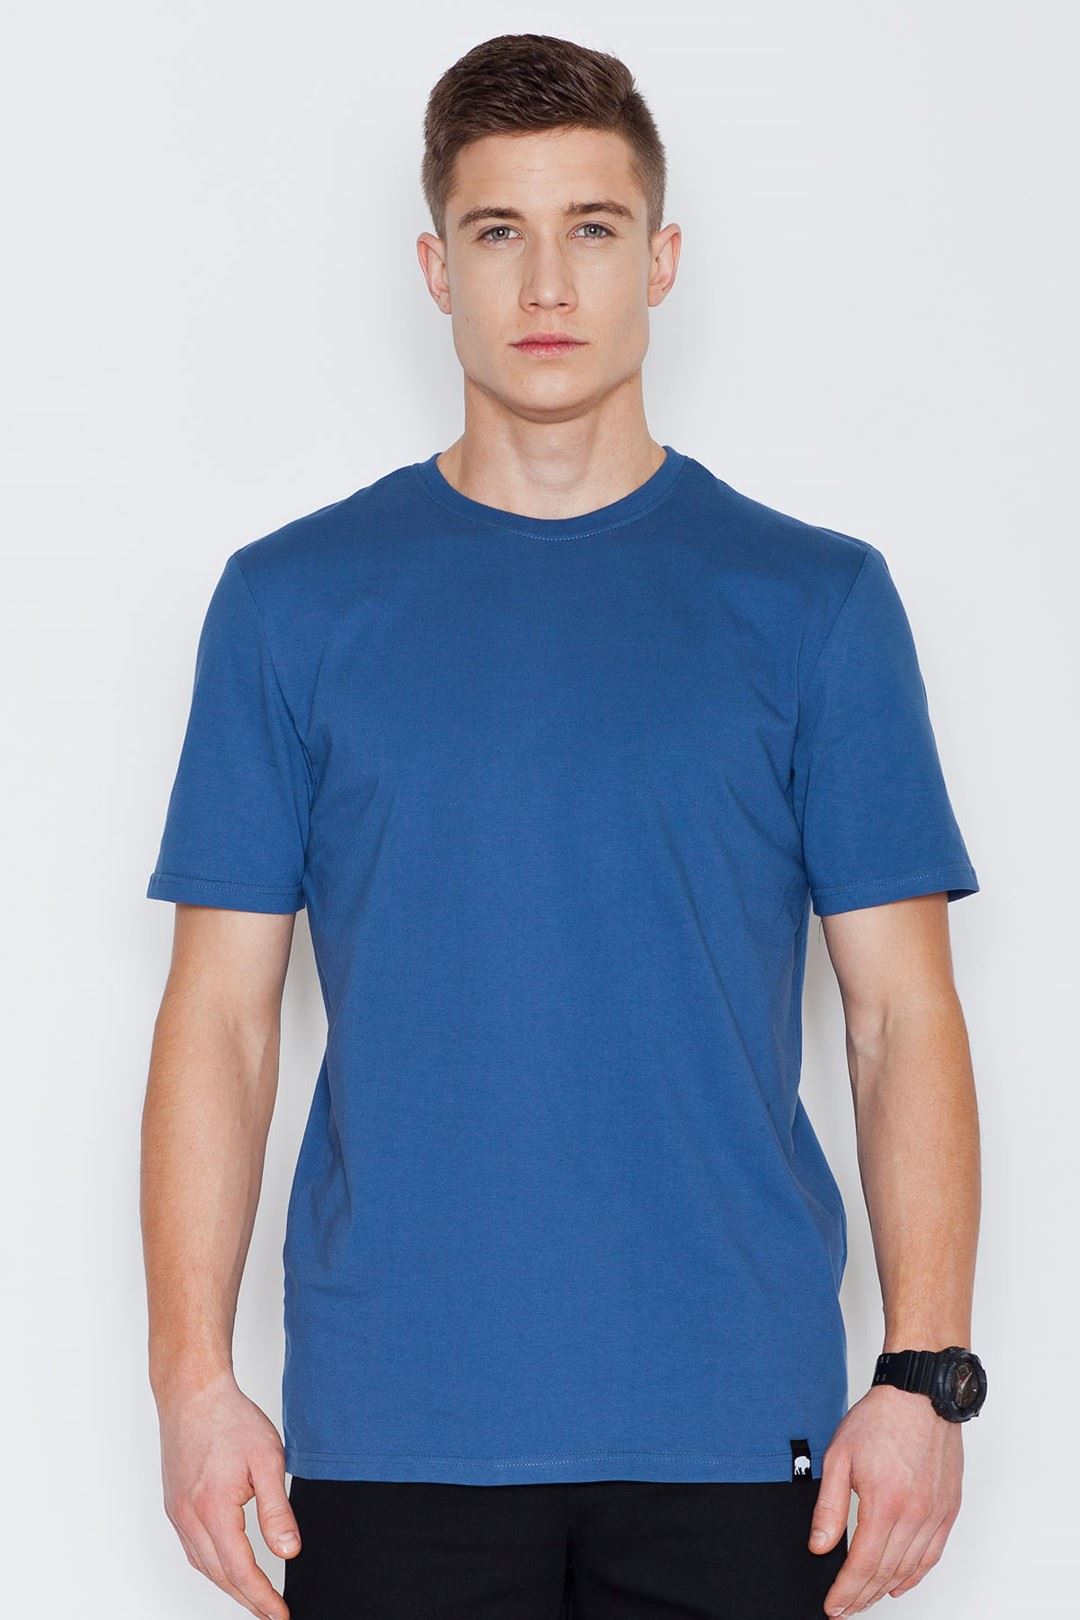 T-shirt V001 Blue XXL